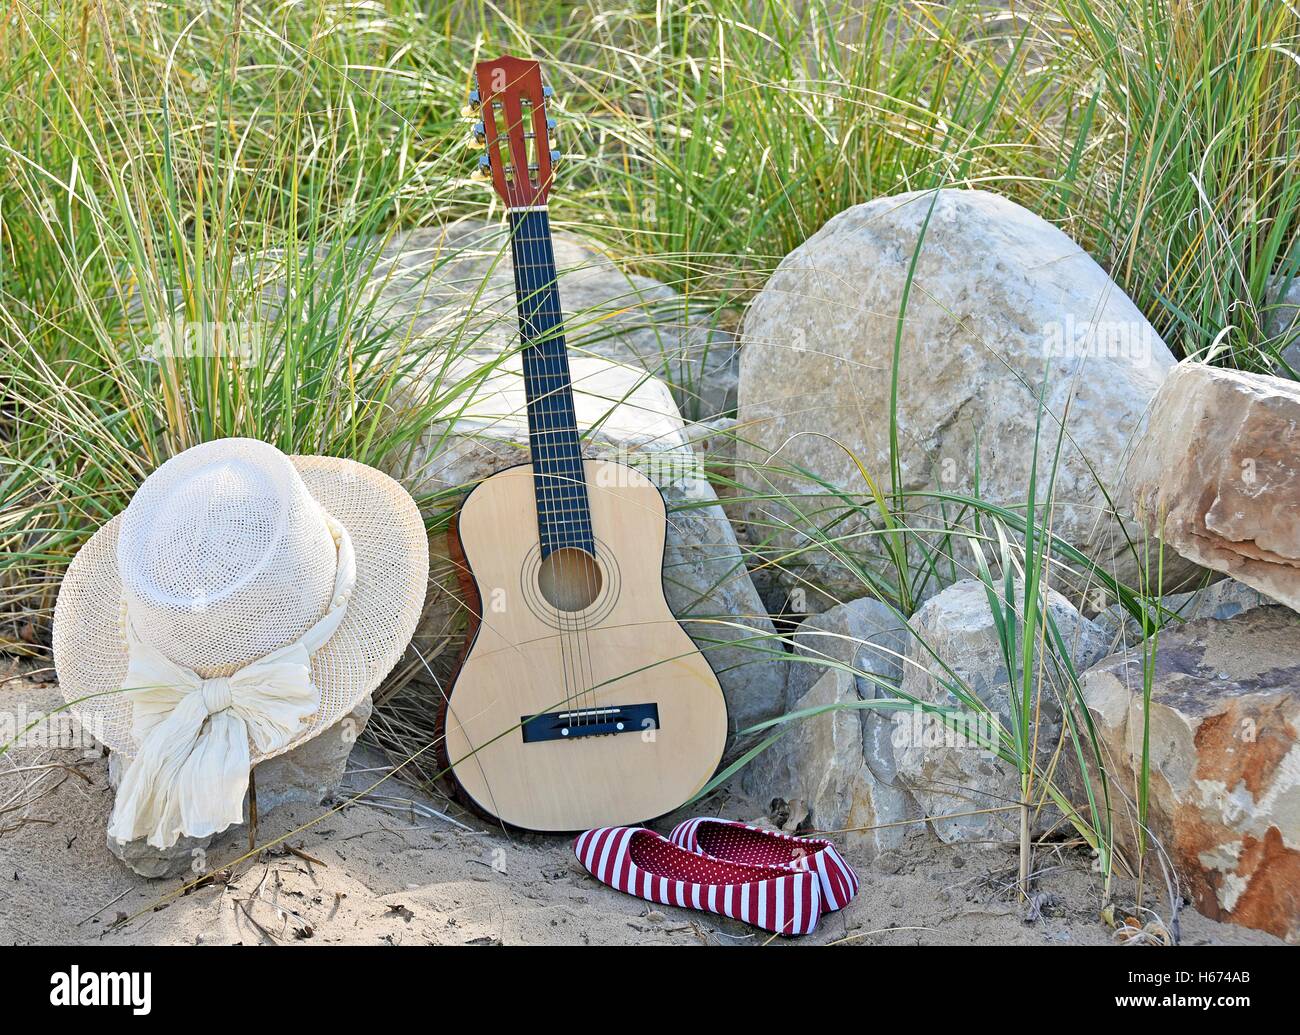 Guitare avec chapeau et rouge et blanc à rayures chaussures dans le sable de la plage et de la roche Banque D'Images